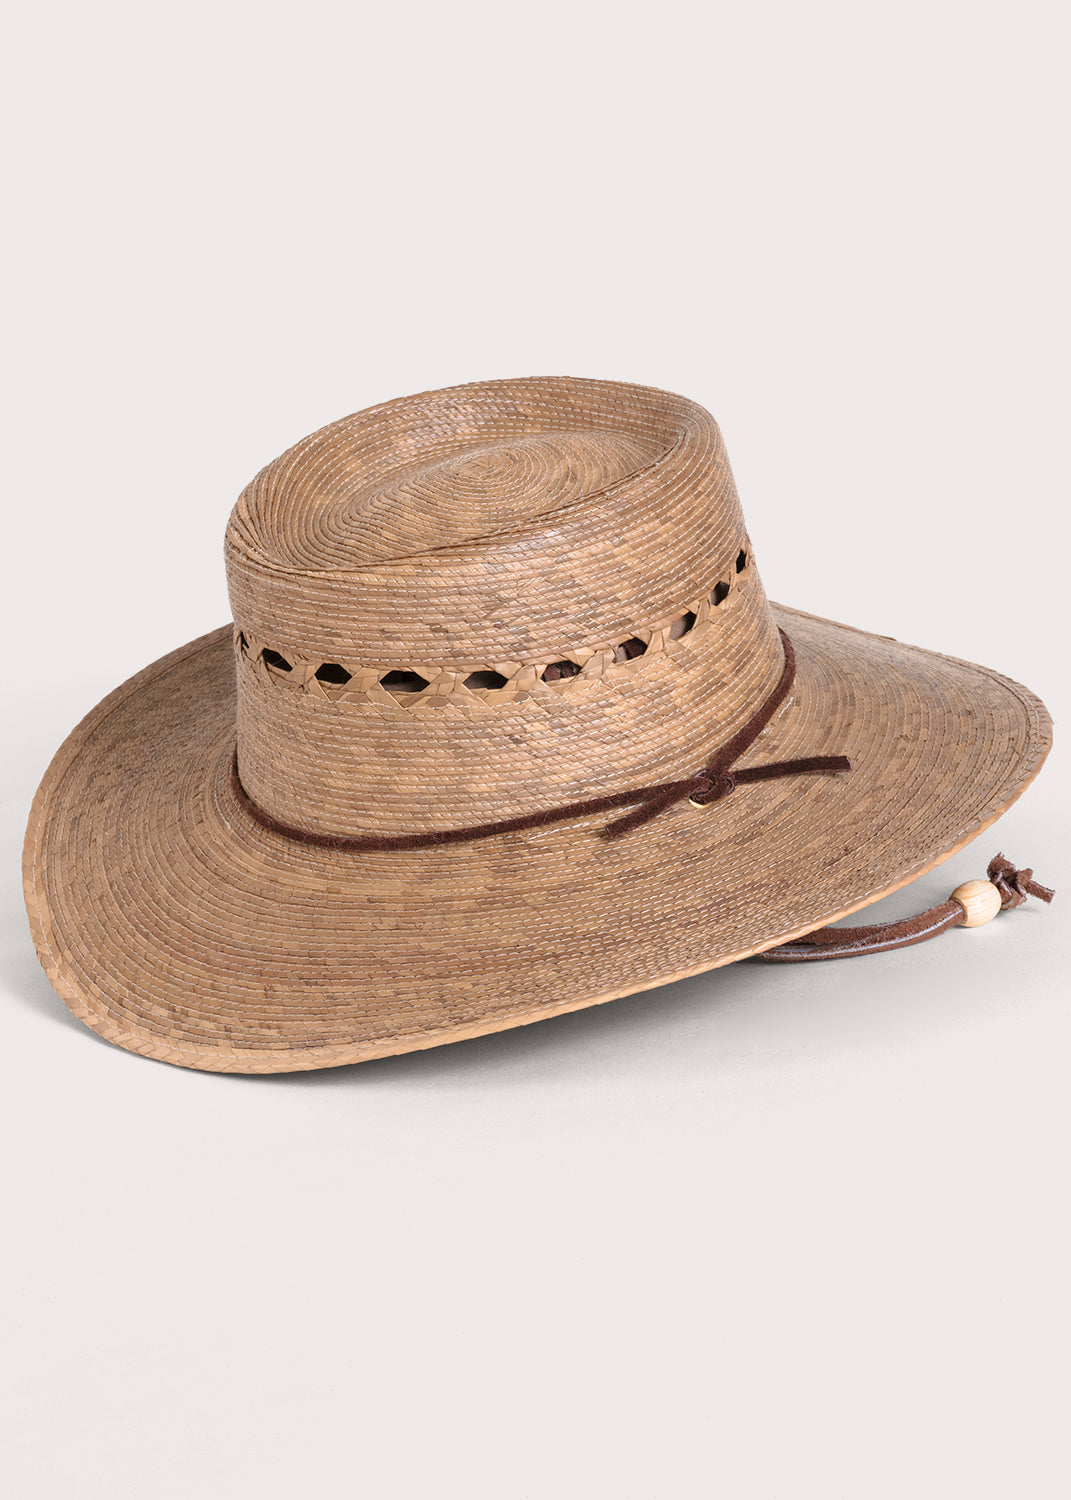 Tula Hat - Outback Lattice